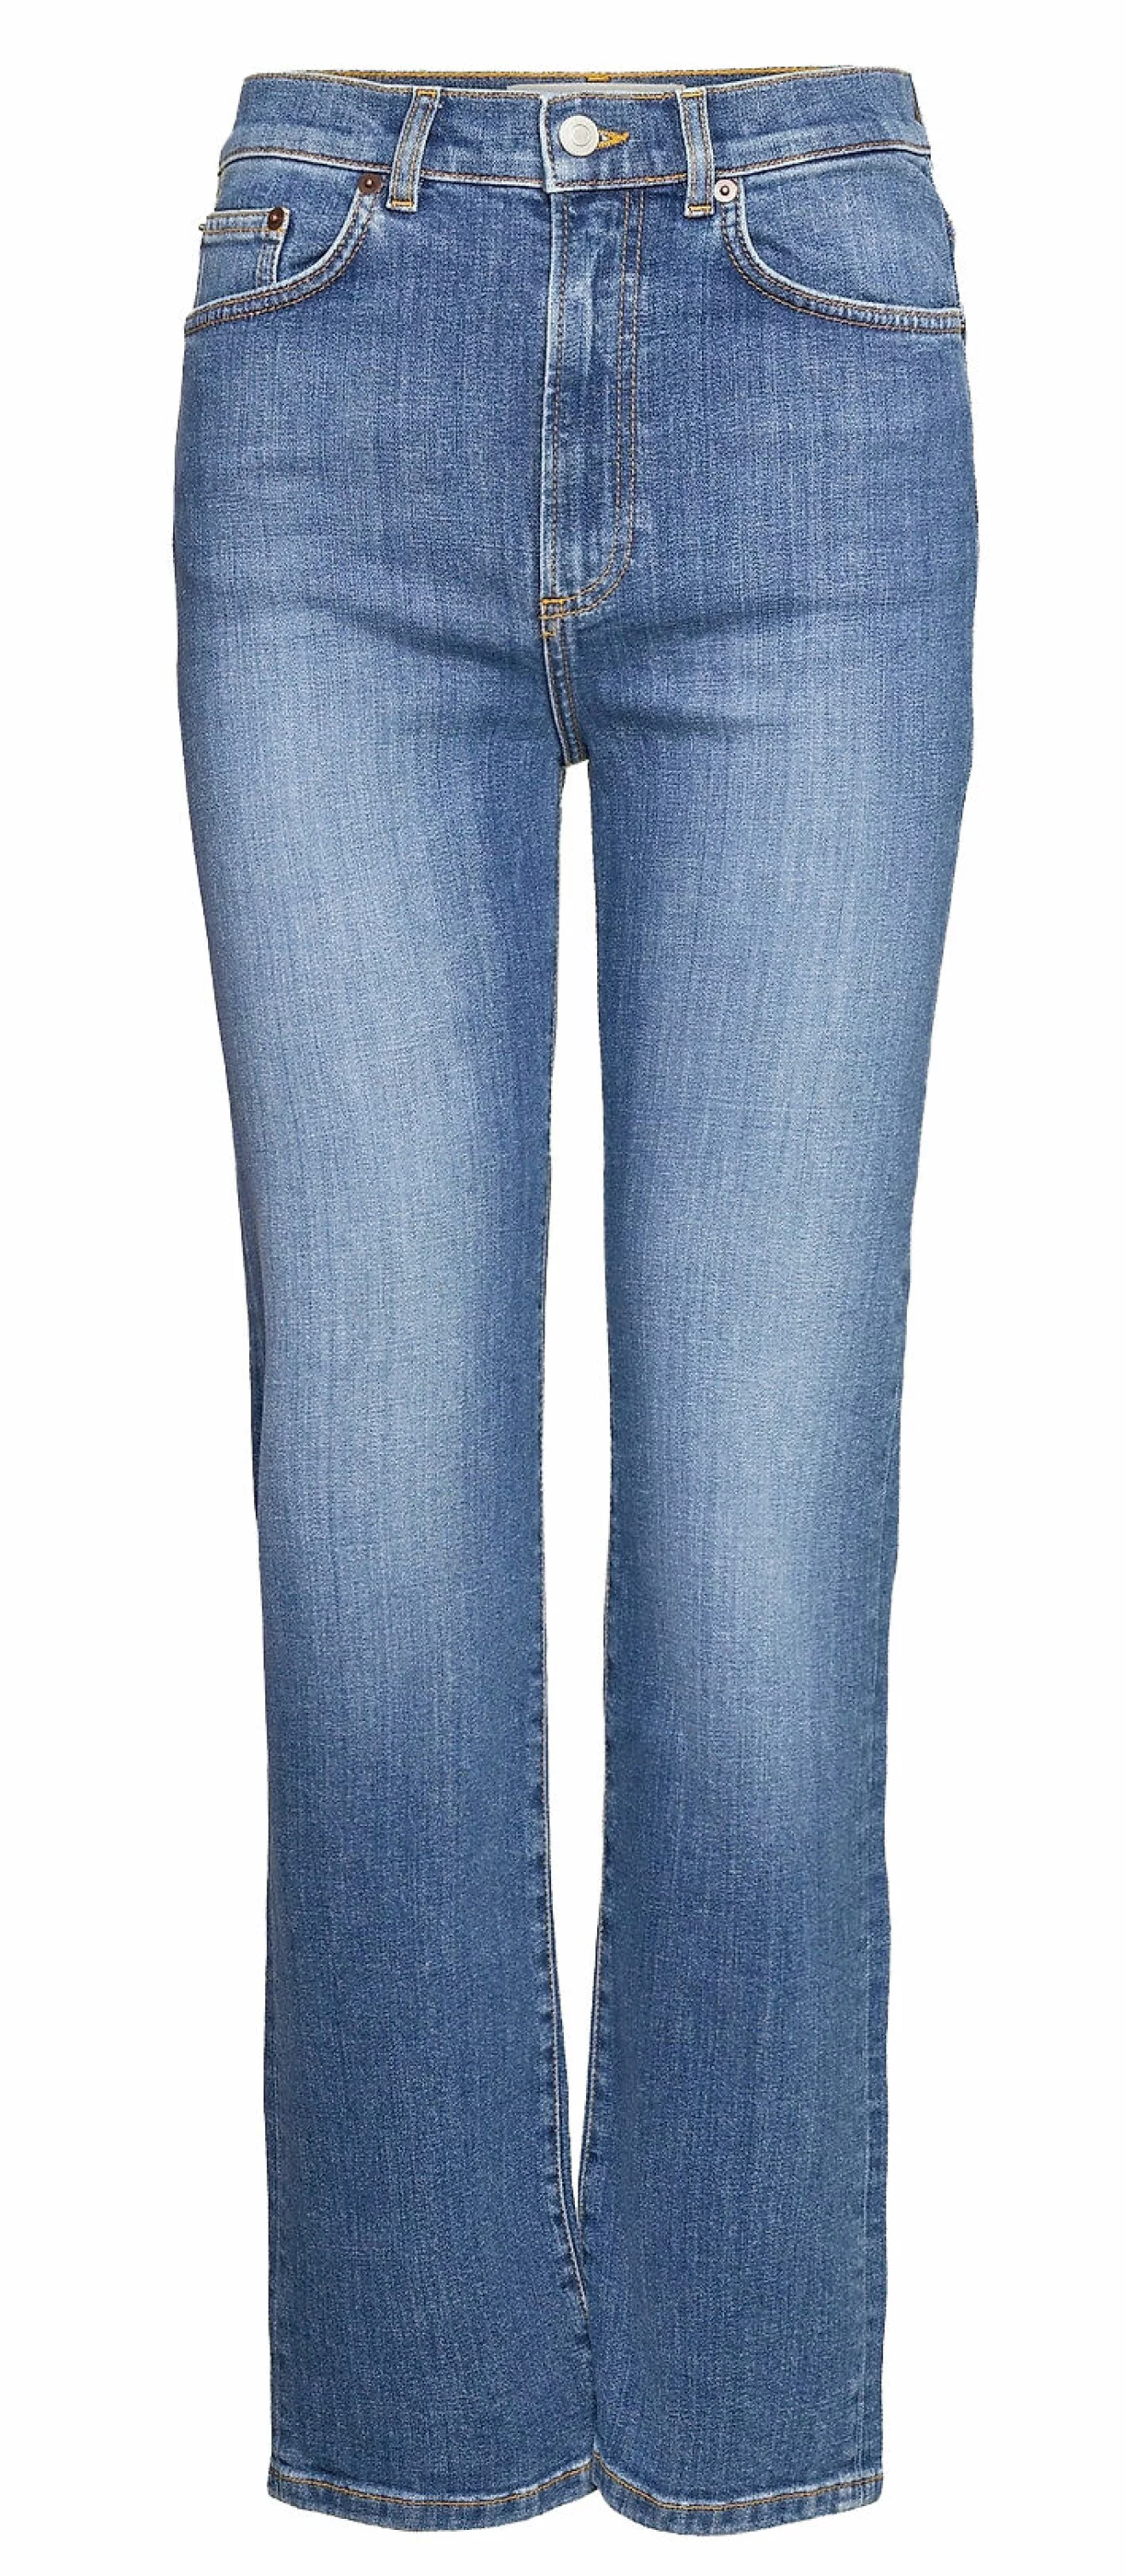 Jeans i rak modell med smickarande passform hos Jeanerica